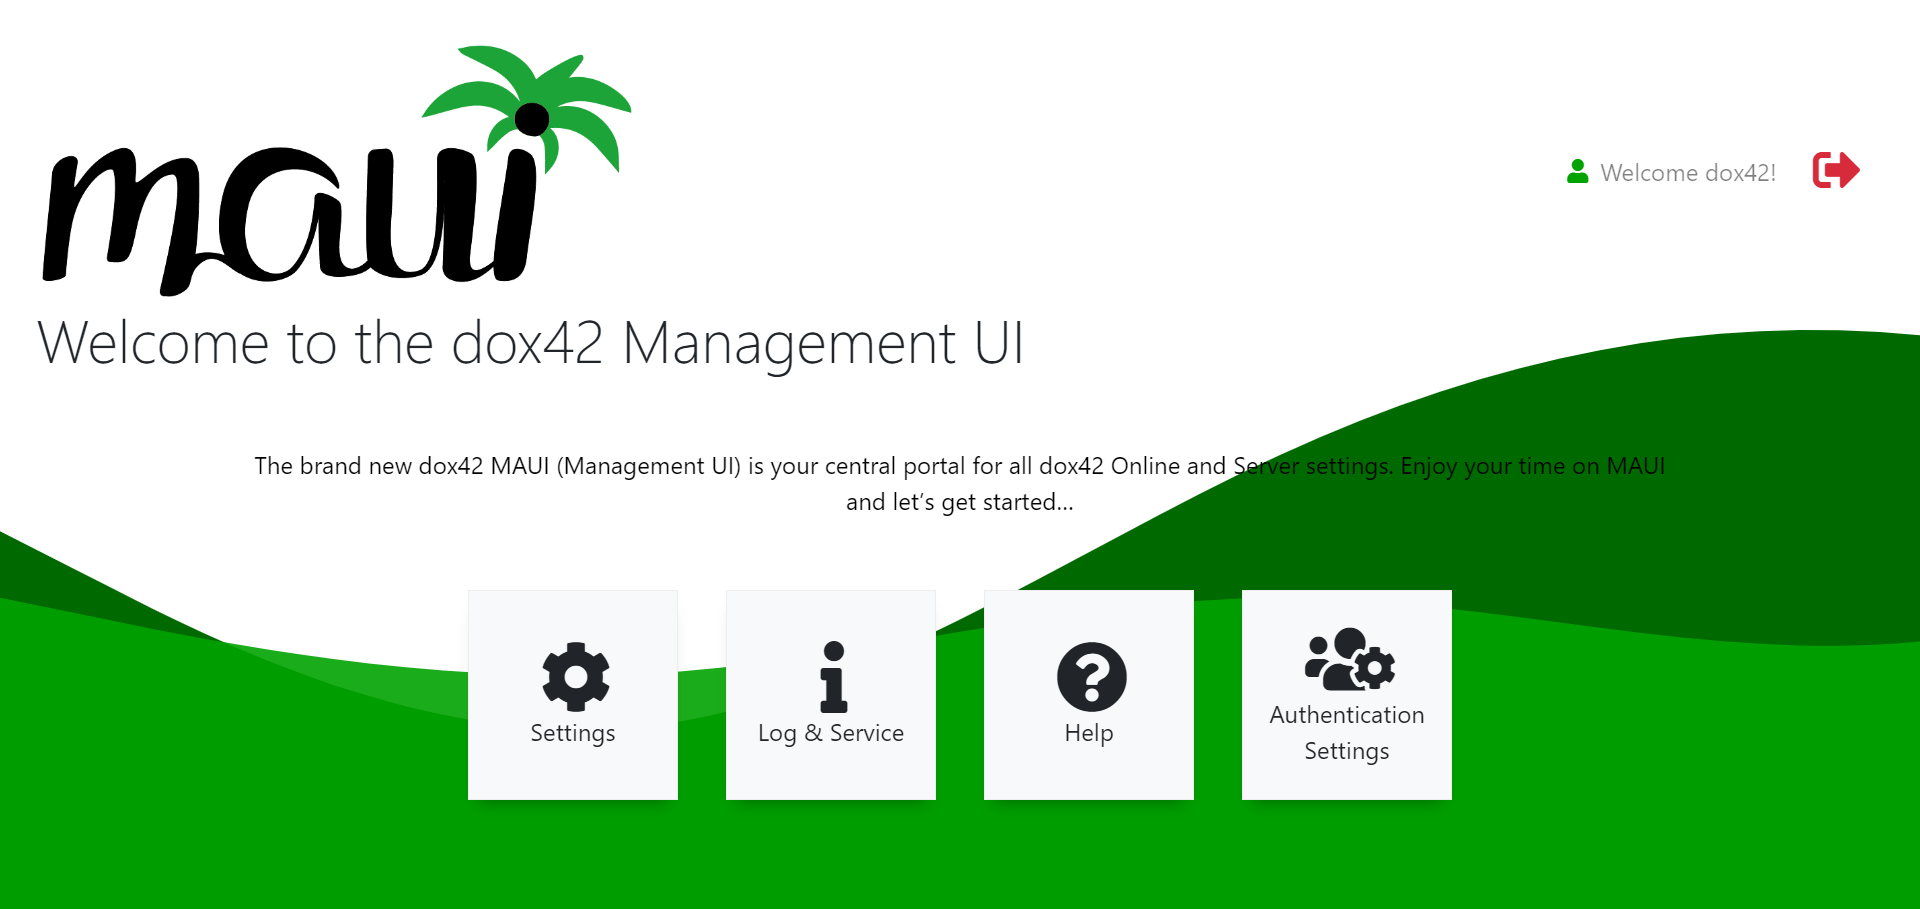 Die dox42 Management UI ist das zentrale Portal für alle Ihre dox42 Online Einstellungen